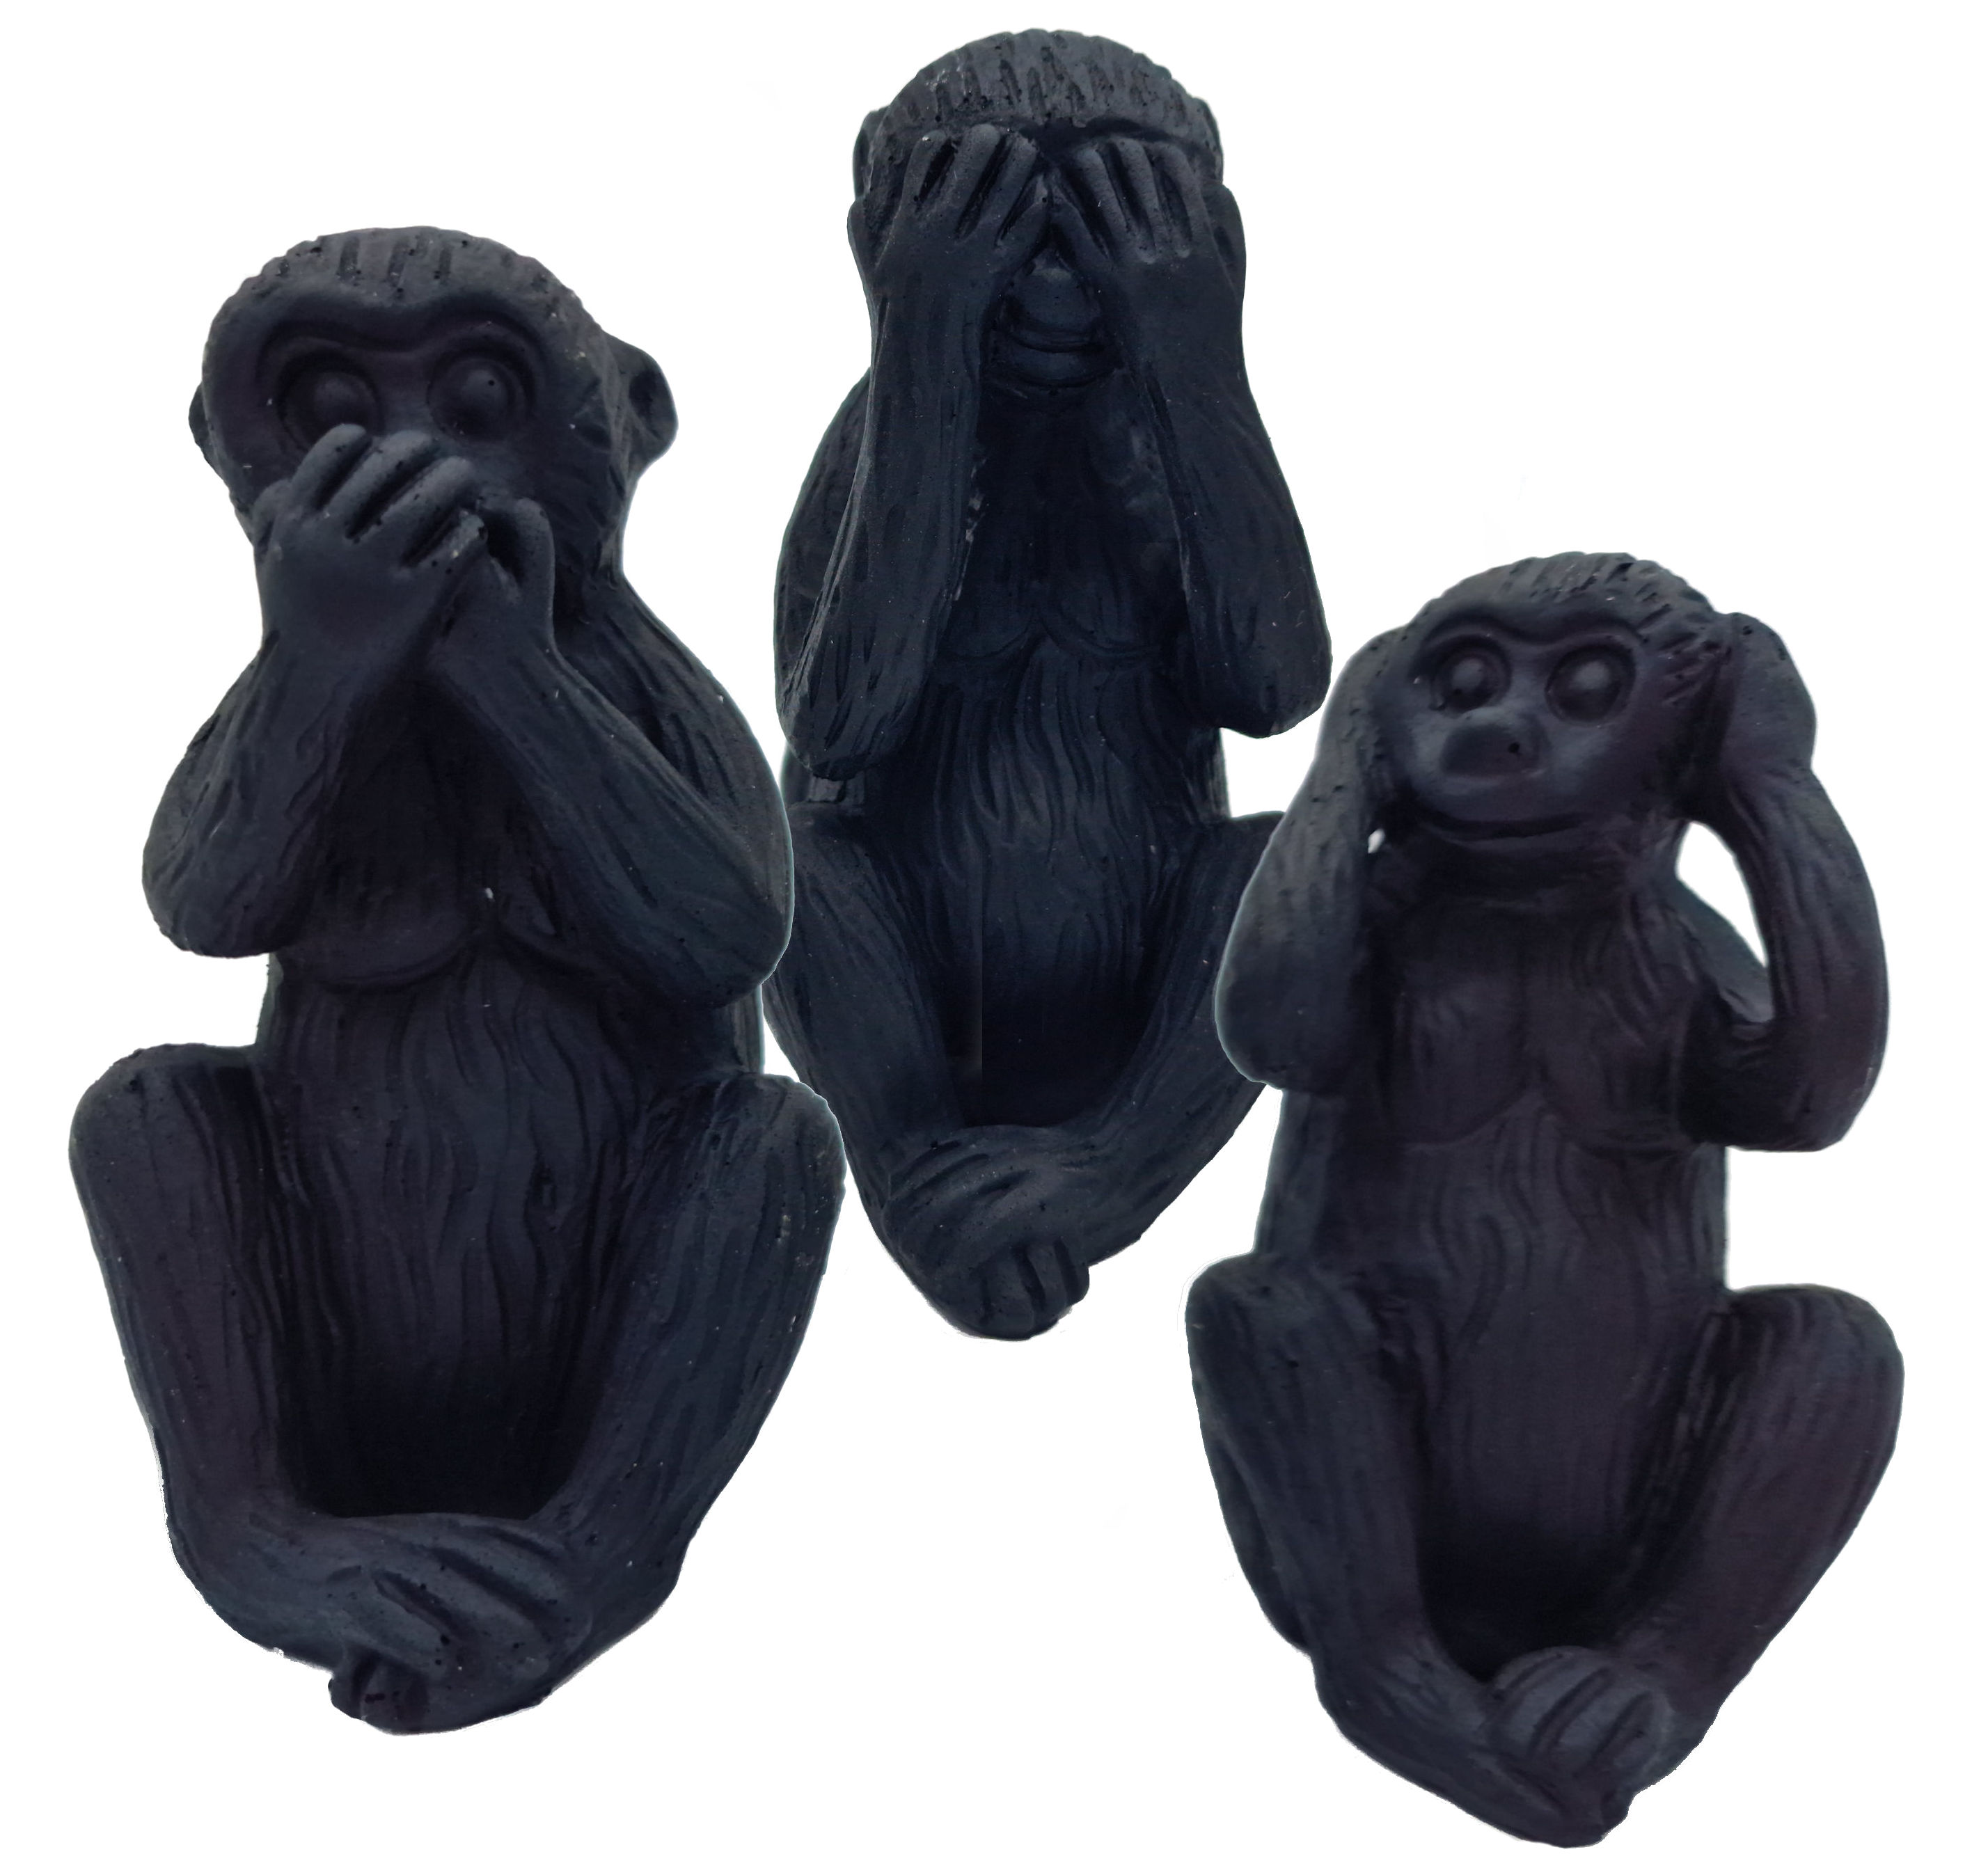 3 Weise Affen Deko Figuren schwarz - 12 cm - Kunststoff Tierfiguren Affentrio Nichts Hören Nichts Sehen Nichts Sagen